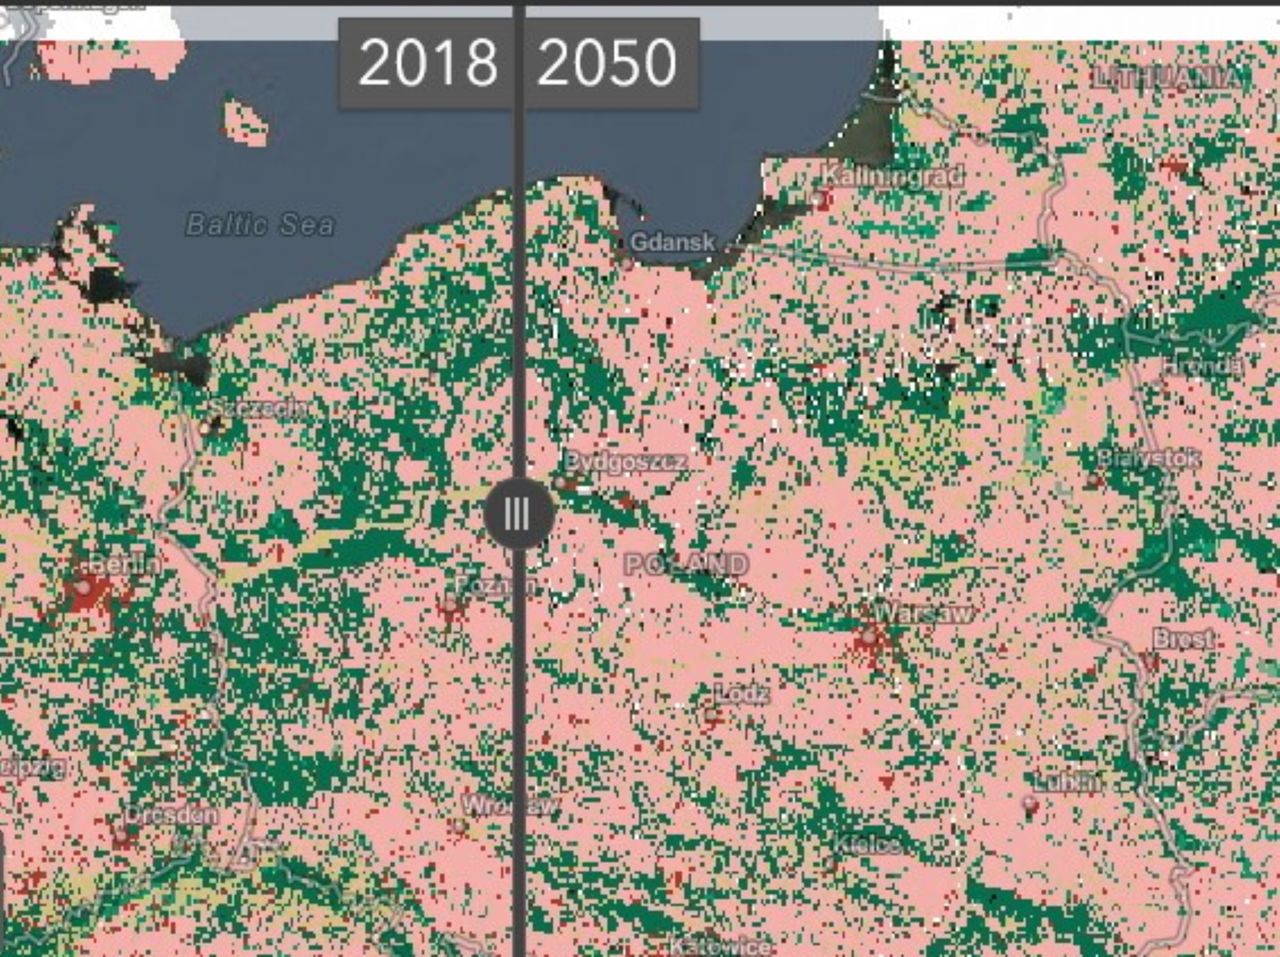 Świat w 2050 roku. Mapa pokazuje zmiany, których możemy się spodziewać